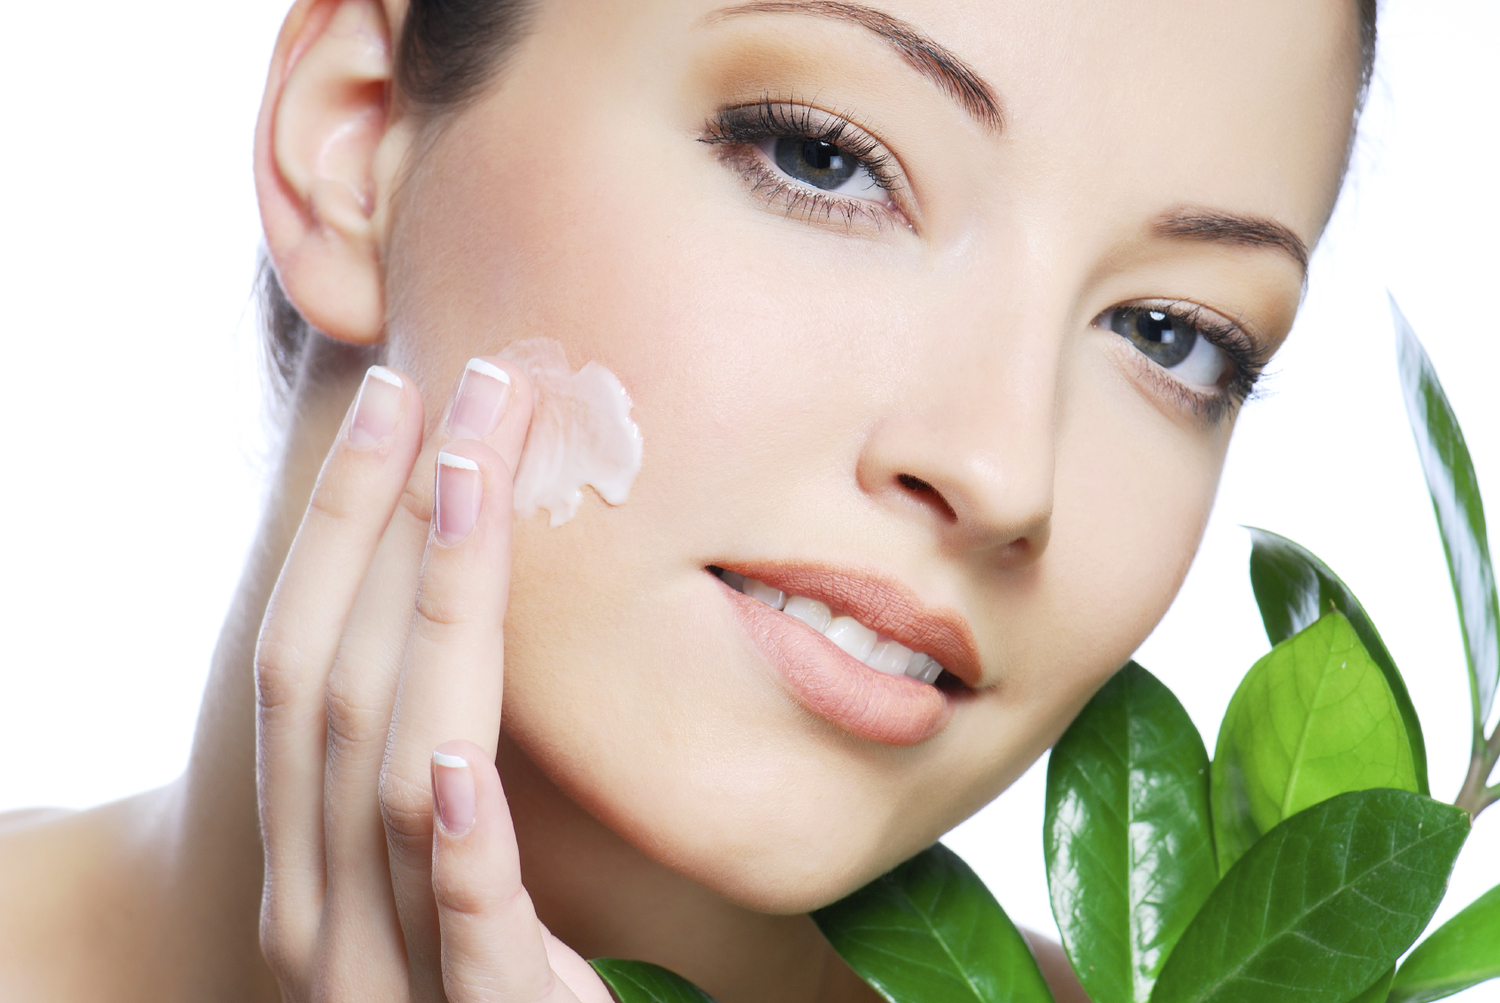  Cosmetica: il 2015 segna una crescita del 2,2%